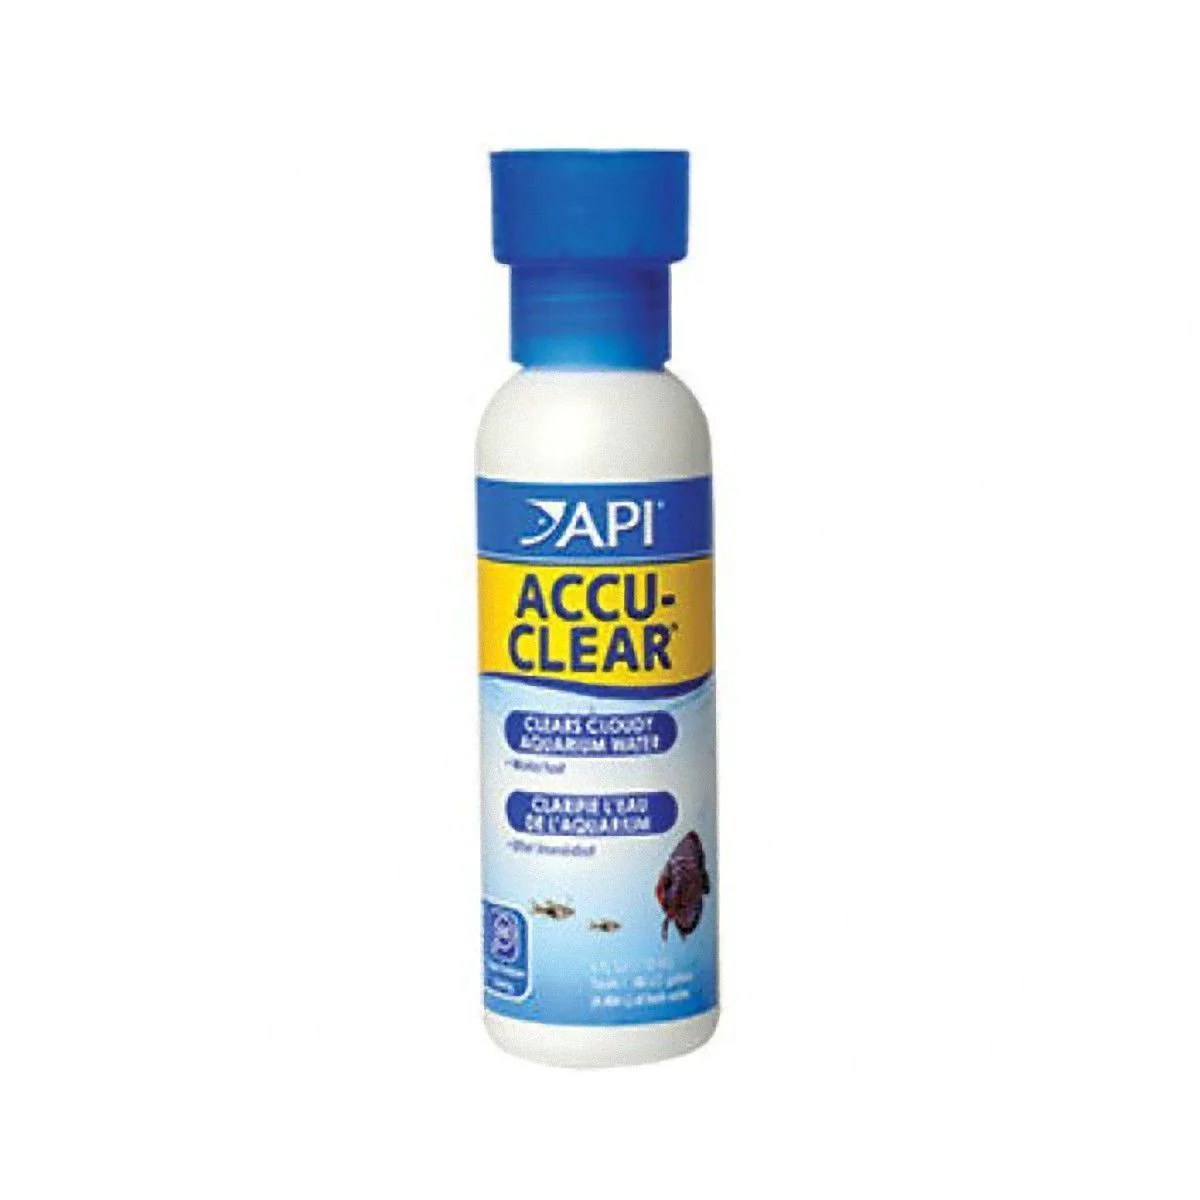 Accu-Clear